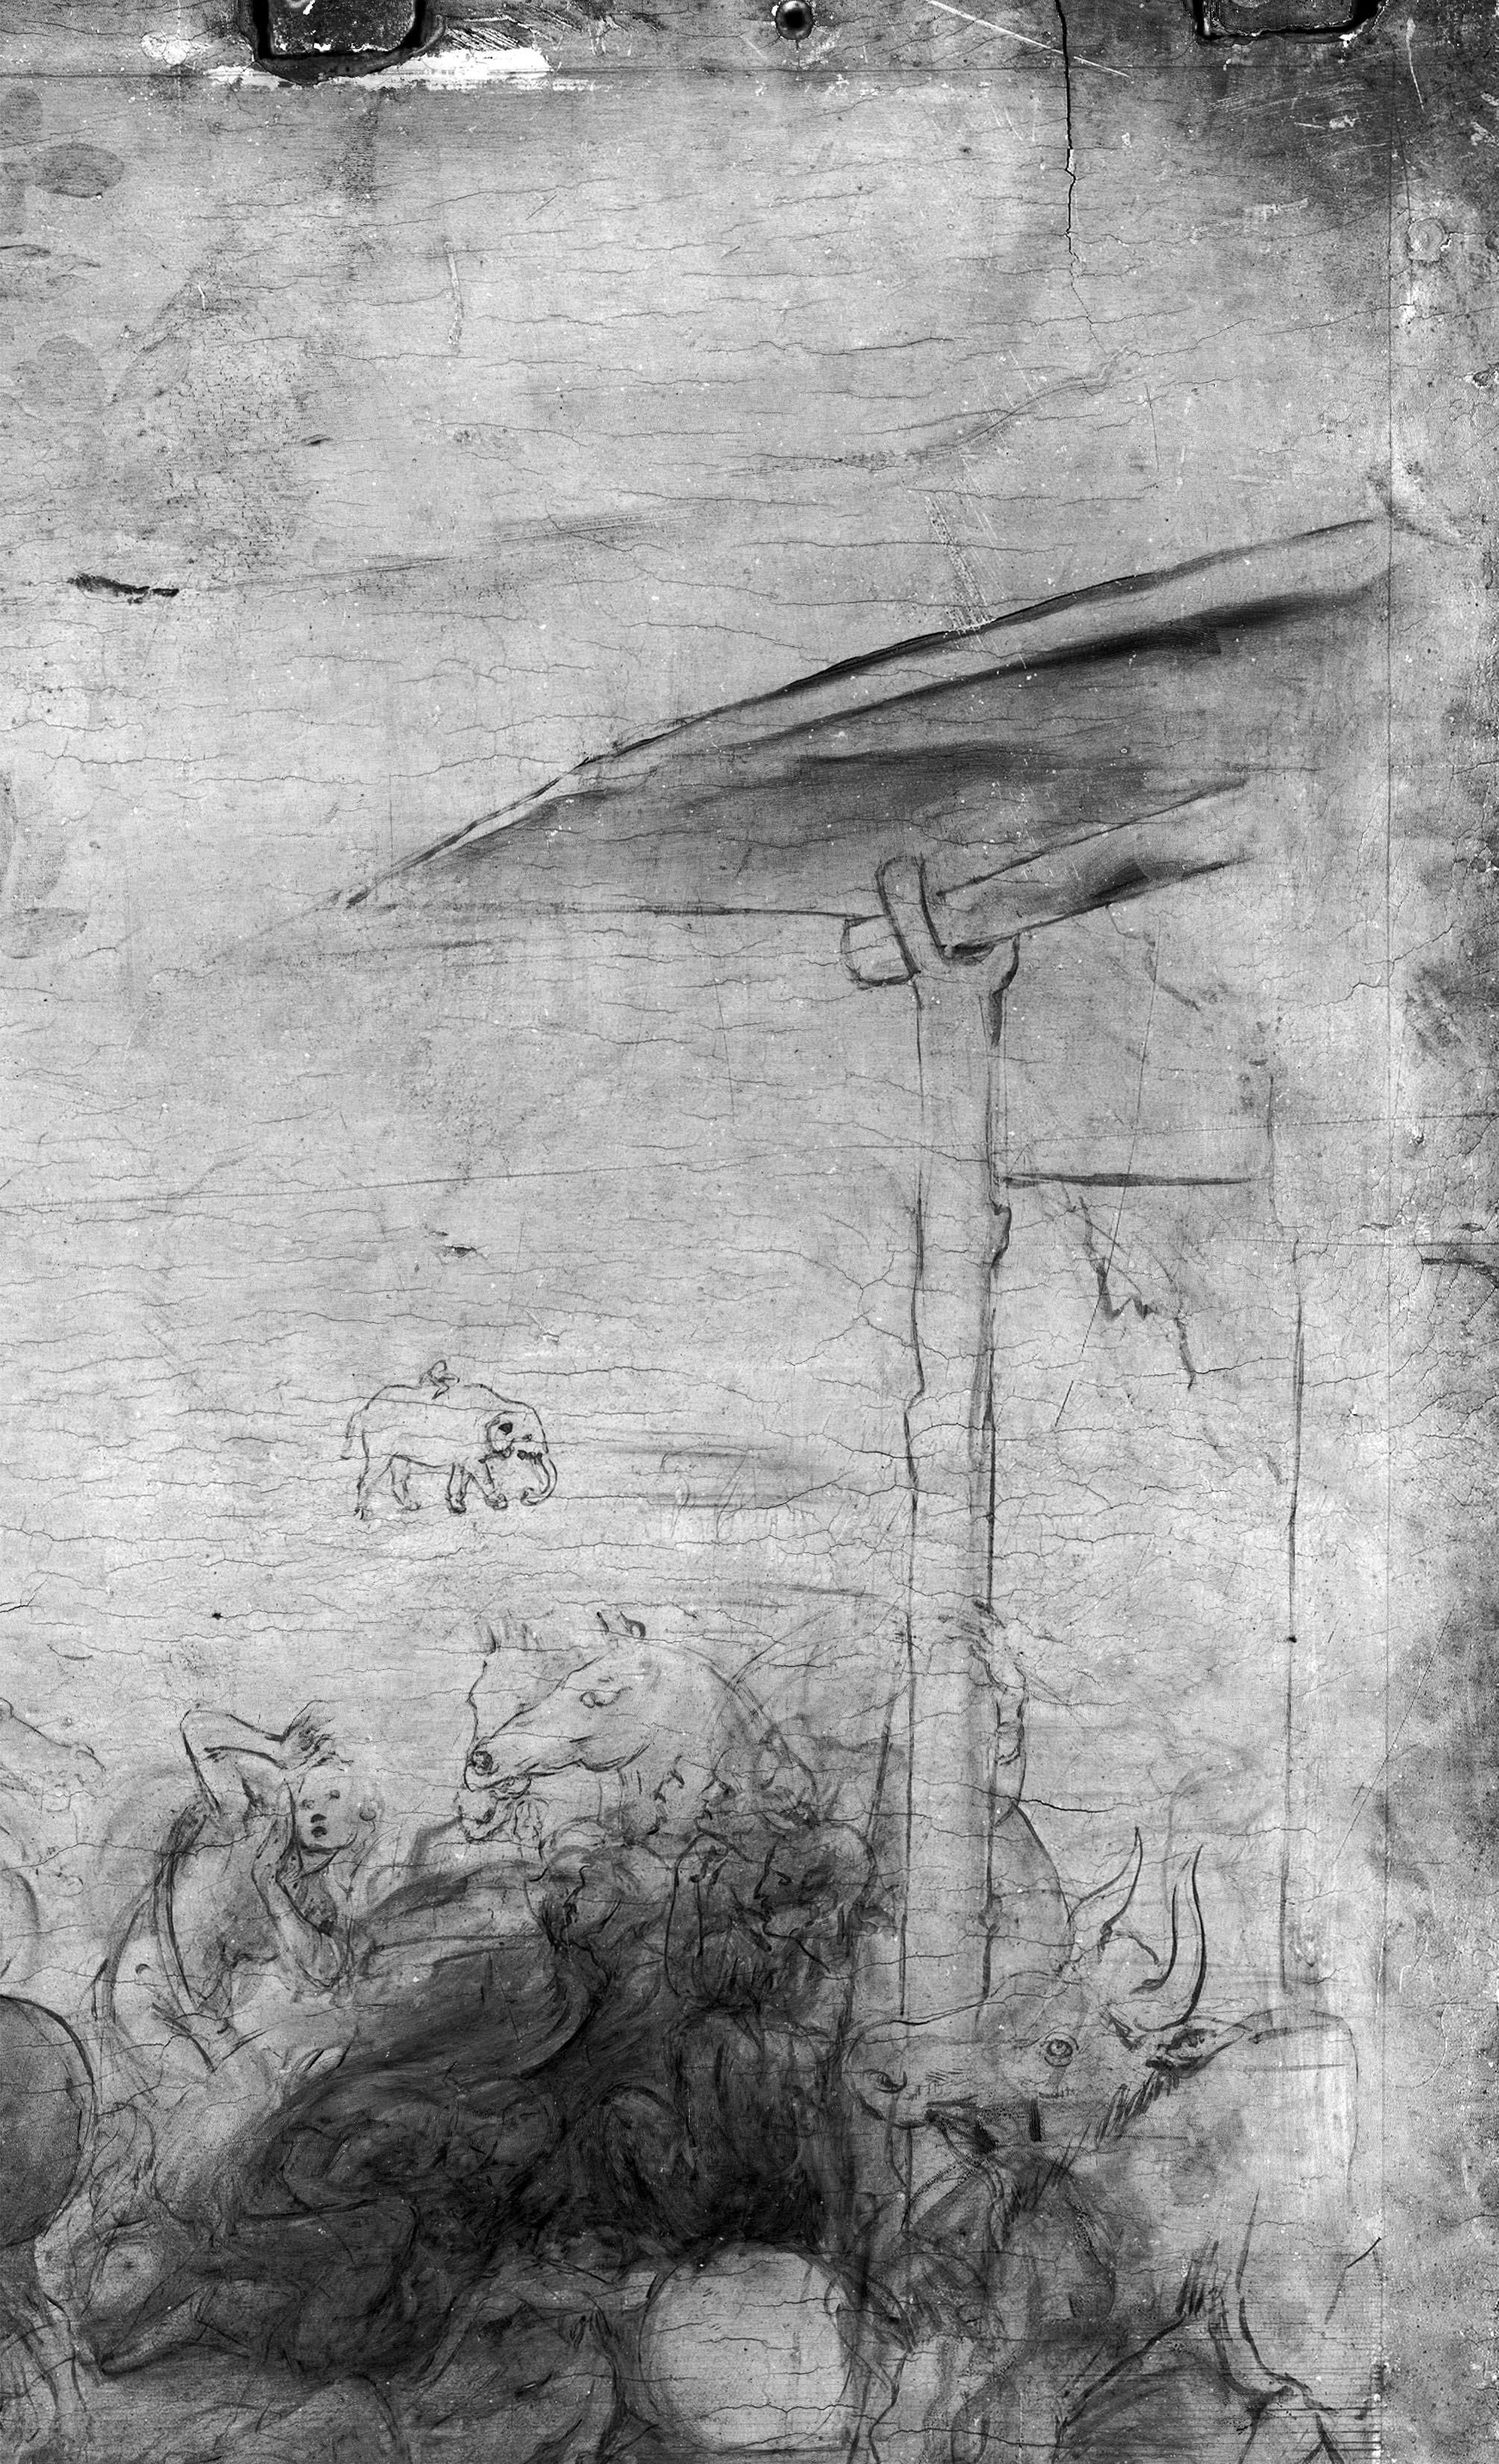 Il restauro dell’Adorazione dei Magi di Leonardo da Vinci. Capire il non-finito